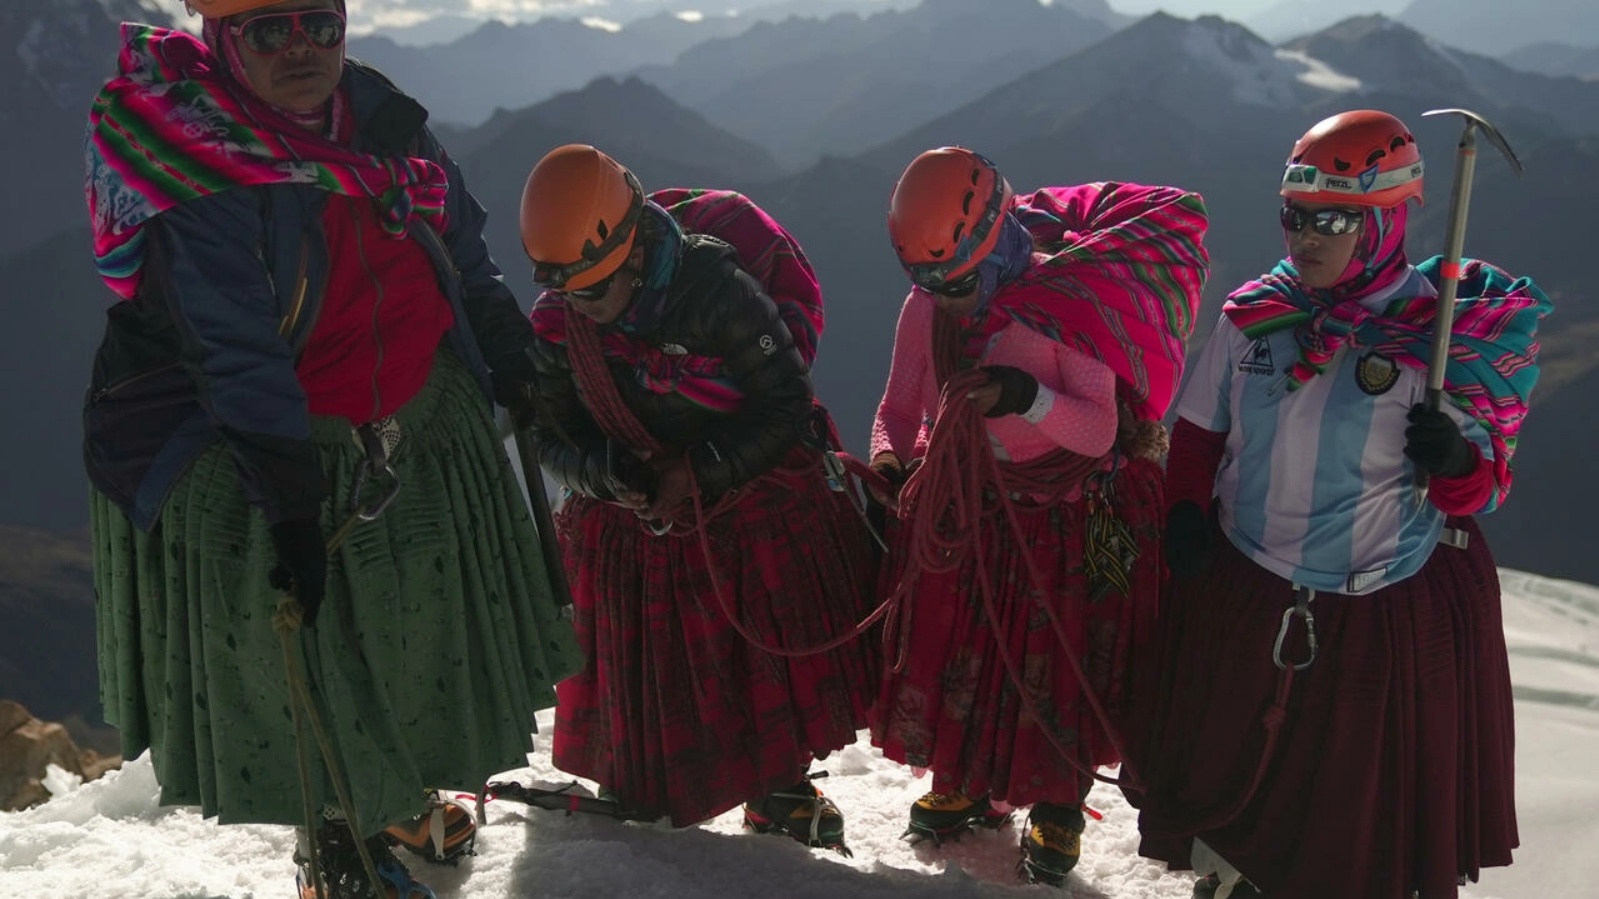 (من اليسار إلى اليمين) أديلا يوسكو، وسينوبيا يوسكو، وسيسيليا يوسكو، وكاميلا تاركوي يوسكو، من نساء أيمارا من السكان الأصليين يقمن بتسلق تشوليتاس في بوليفيا وارميس، في قمة جبل هواينا بوتوسي الذي يبلغ ارتفاعه 6.088 مترًا